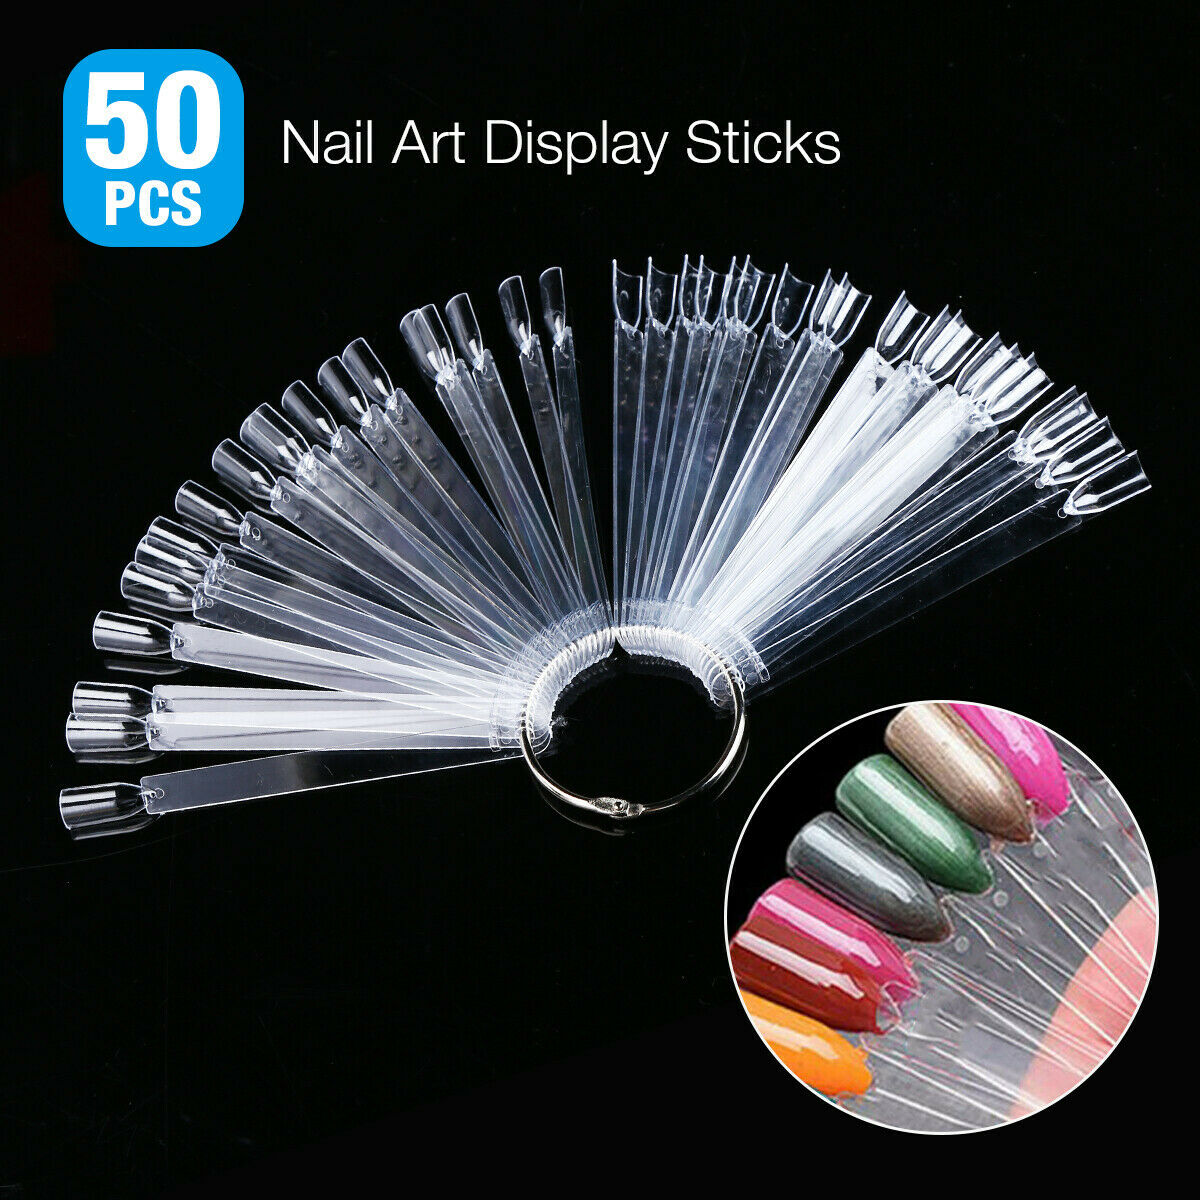 50 PCS Nail Polish Display Practice Tips False Nail Art Tools French Style CHOOSE Color Natural Clear Black Jargod